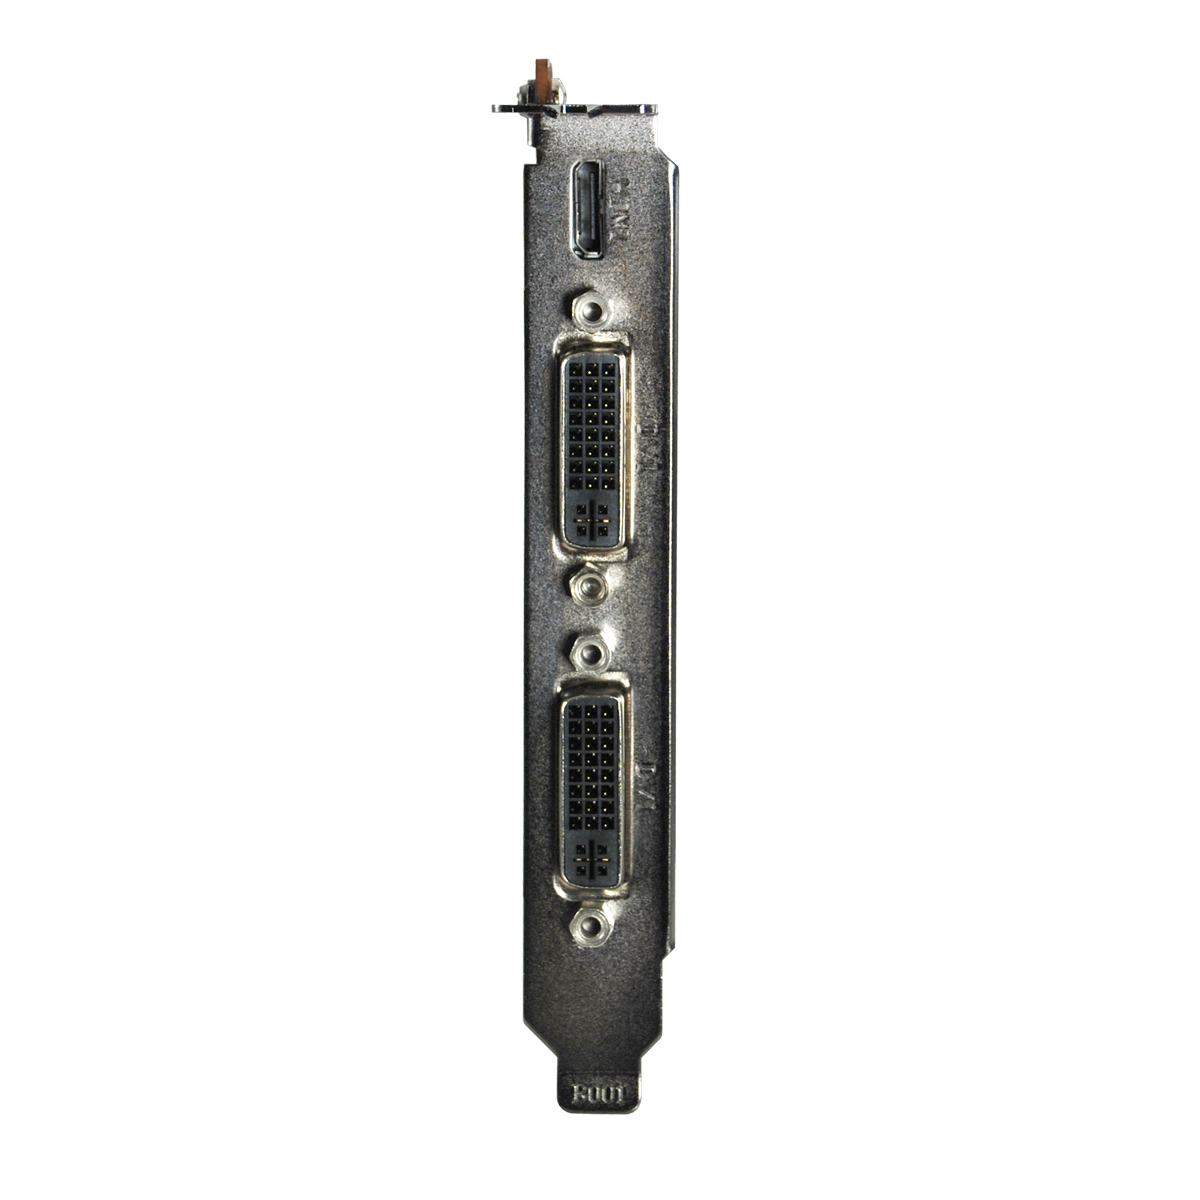 Immagine pubblicata in relazione al seguente contenuto: EVGA lancia la top card GeForce GTX 580 FTW Hydro Copper 2 | Nome immagine: news14187_4.jpg